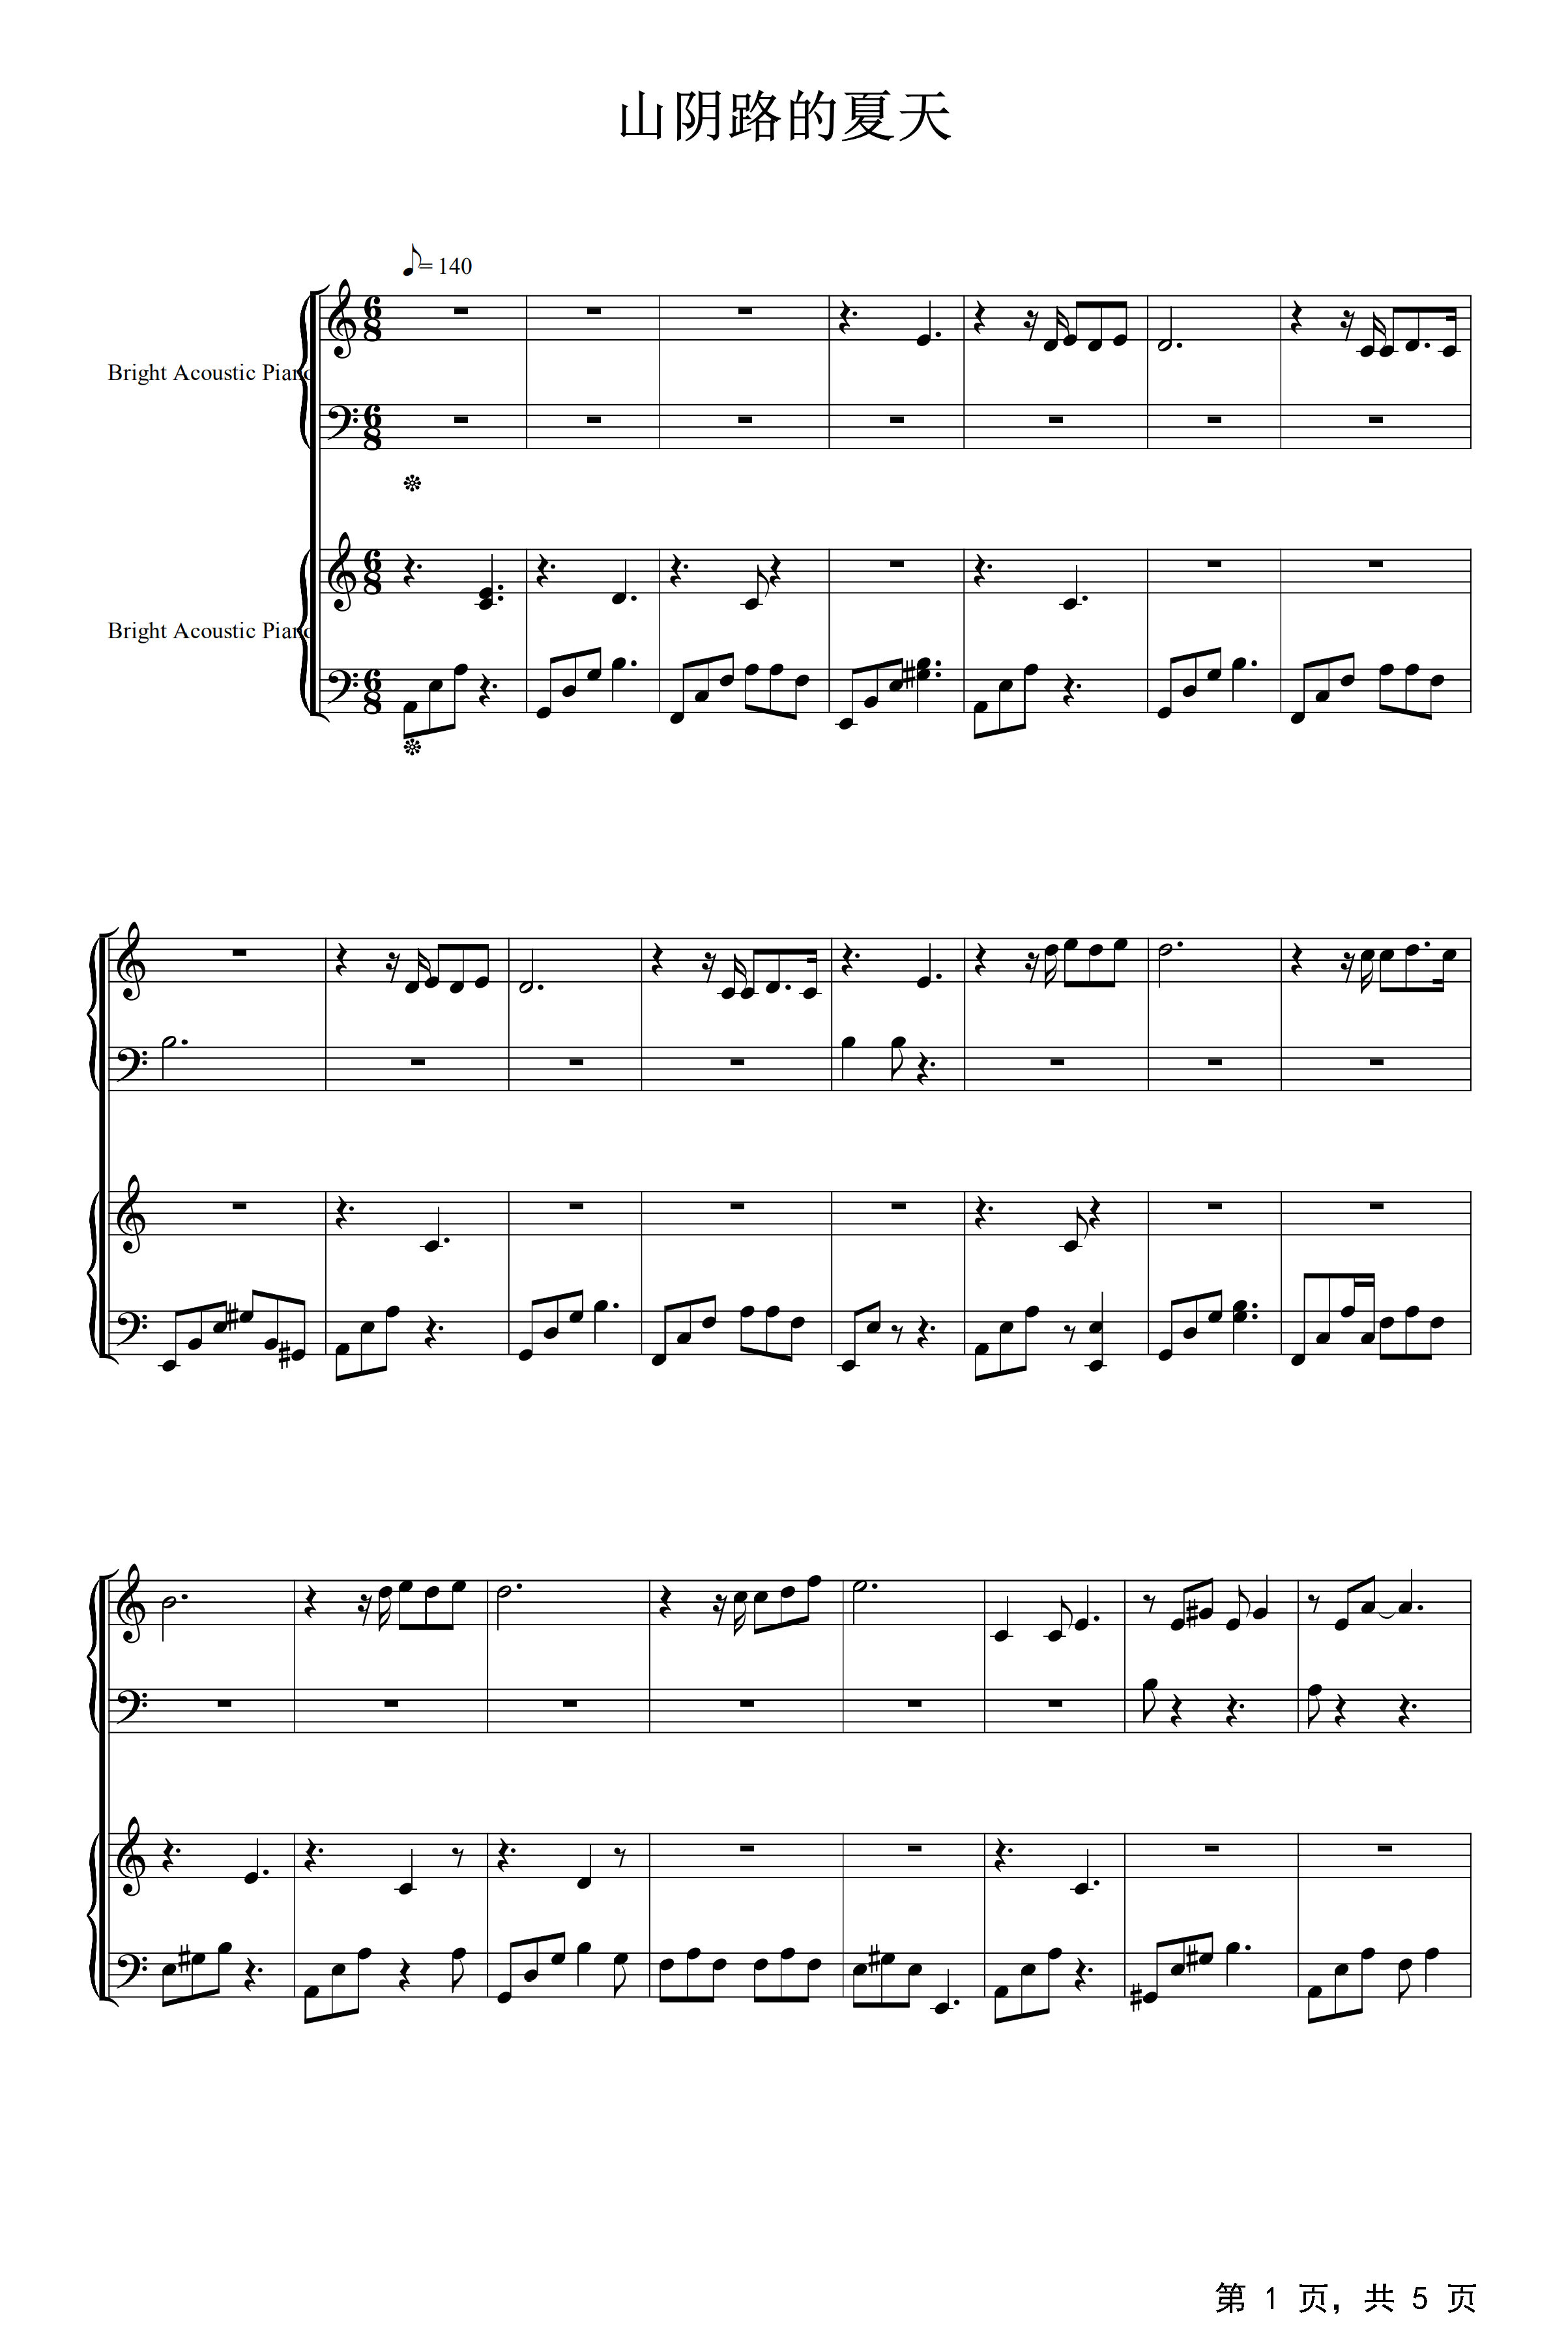 简易版《山阴路的夏天》钢琴谱 - 耿十三C调简谱版 - 入门完整版曲谱 - 钢琴简谱